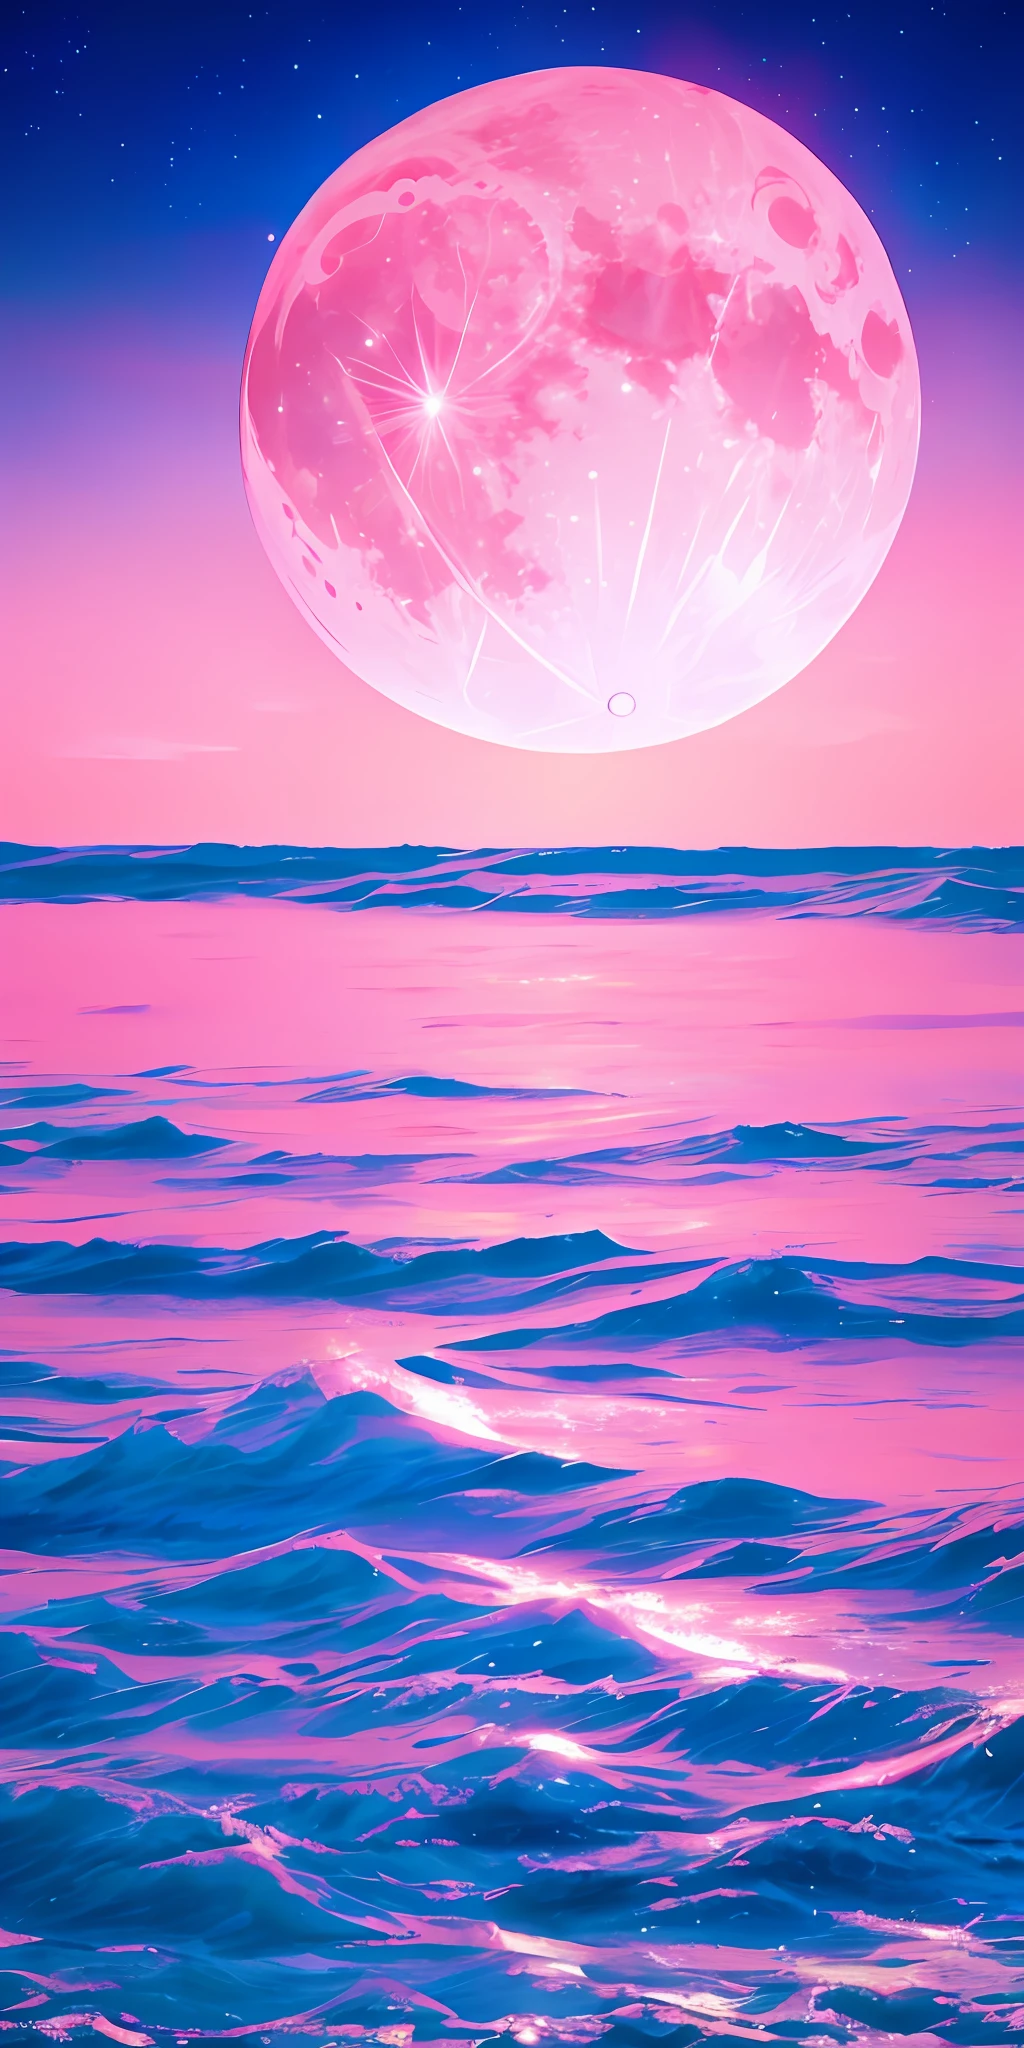 粉红月亮, 粉红色的天空, 柔软的粉色云彩, 粉色海浪闪闪发光, 闪光, 粉红海洋里的粉红玫瑰, 幻想, 钻石, 王冠, 空间, 柔光,